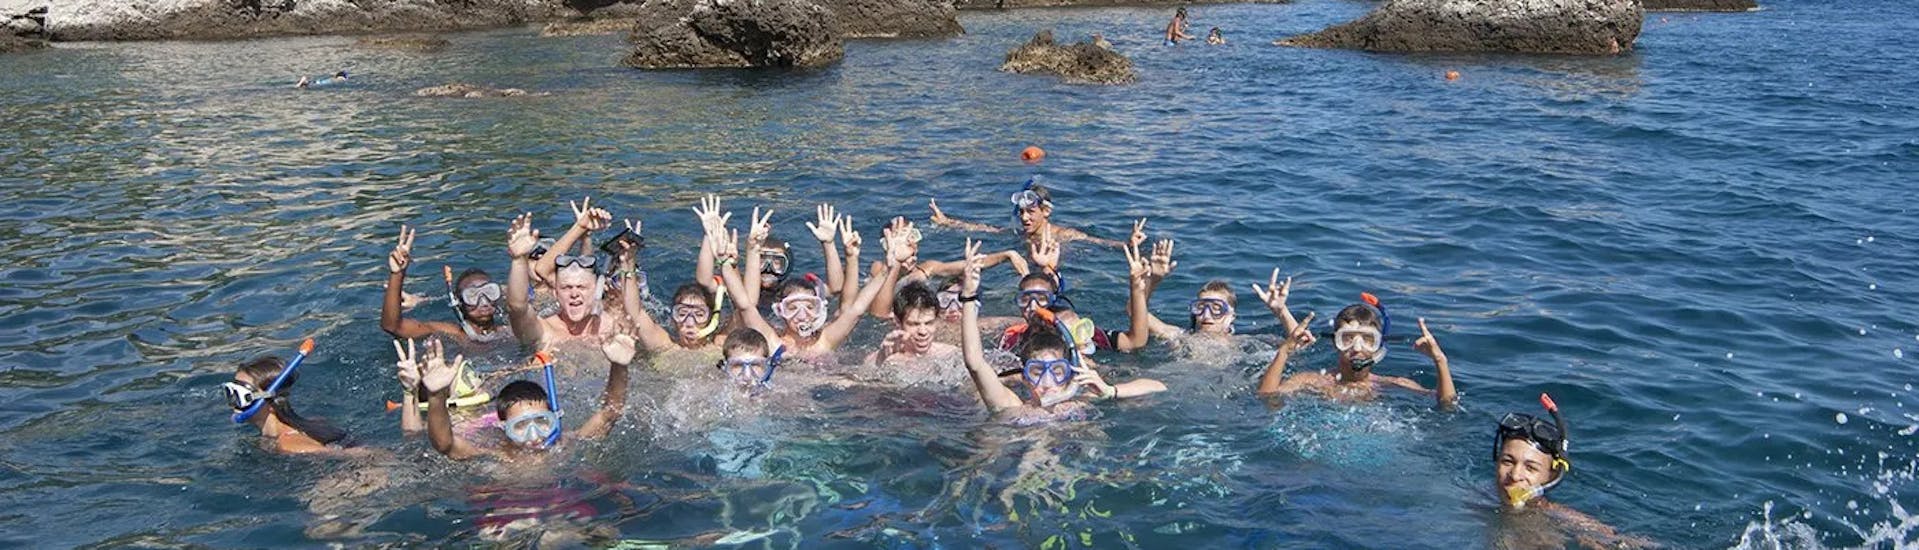 Eine Gruppe von Menschen während der RIB Bootstour entlang der Küste von Taormina mit Schnorcheln mit Nike Diving Centre Taormina.